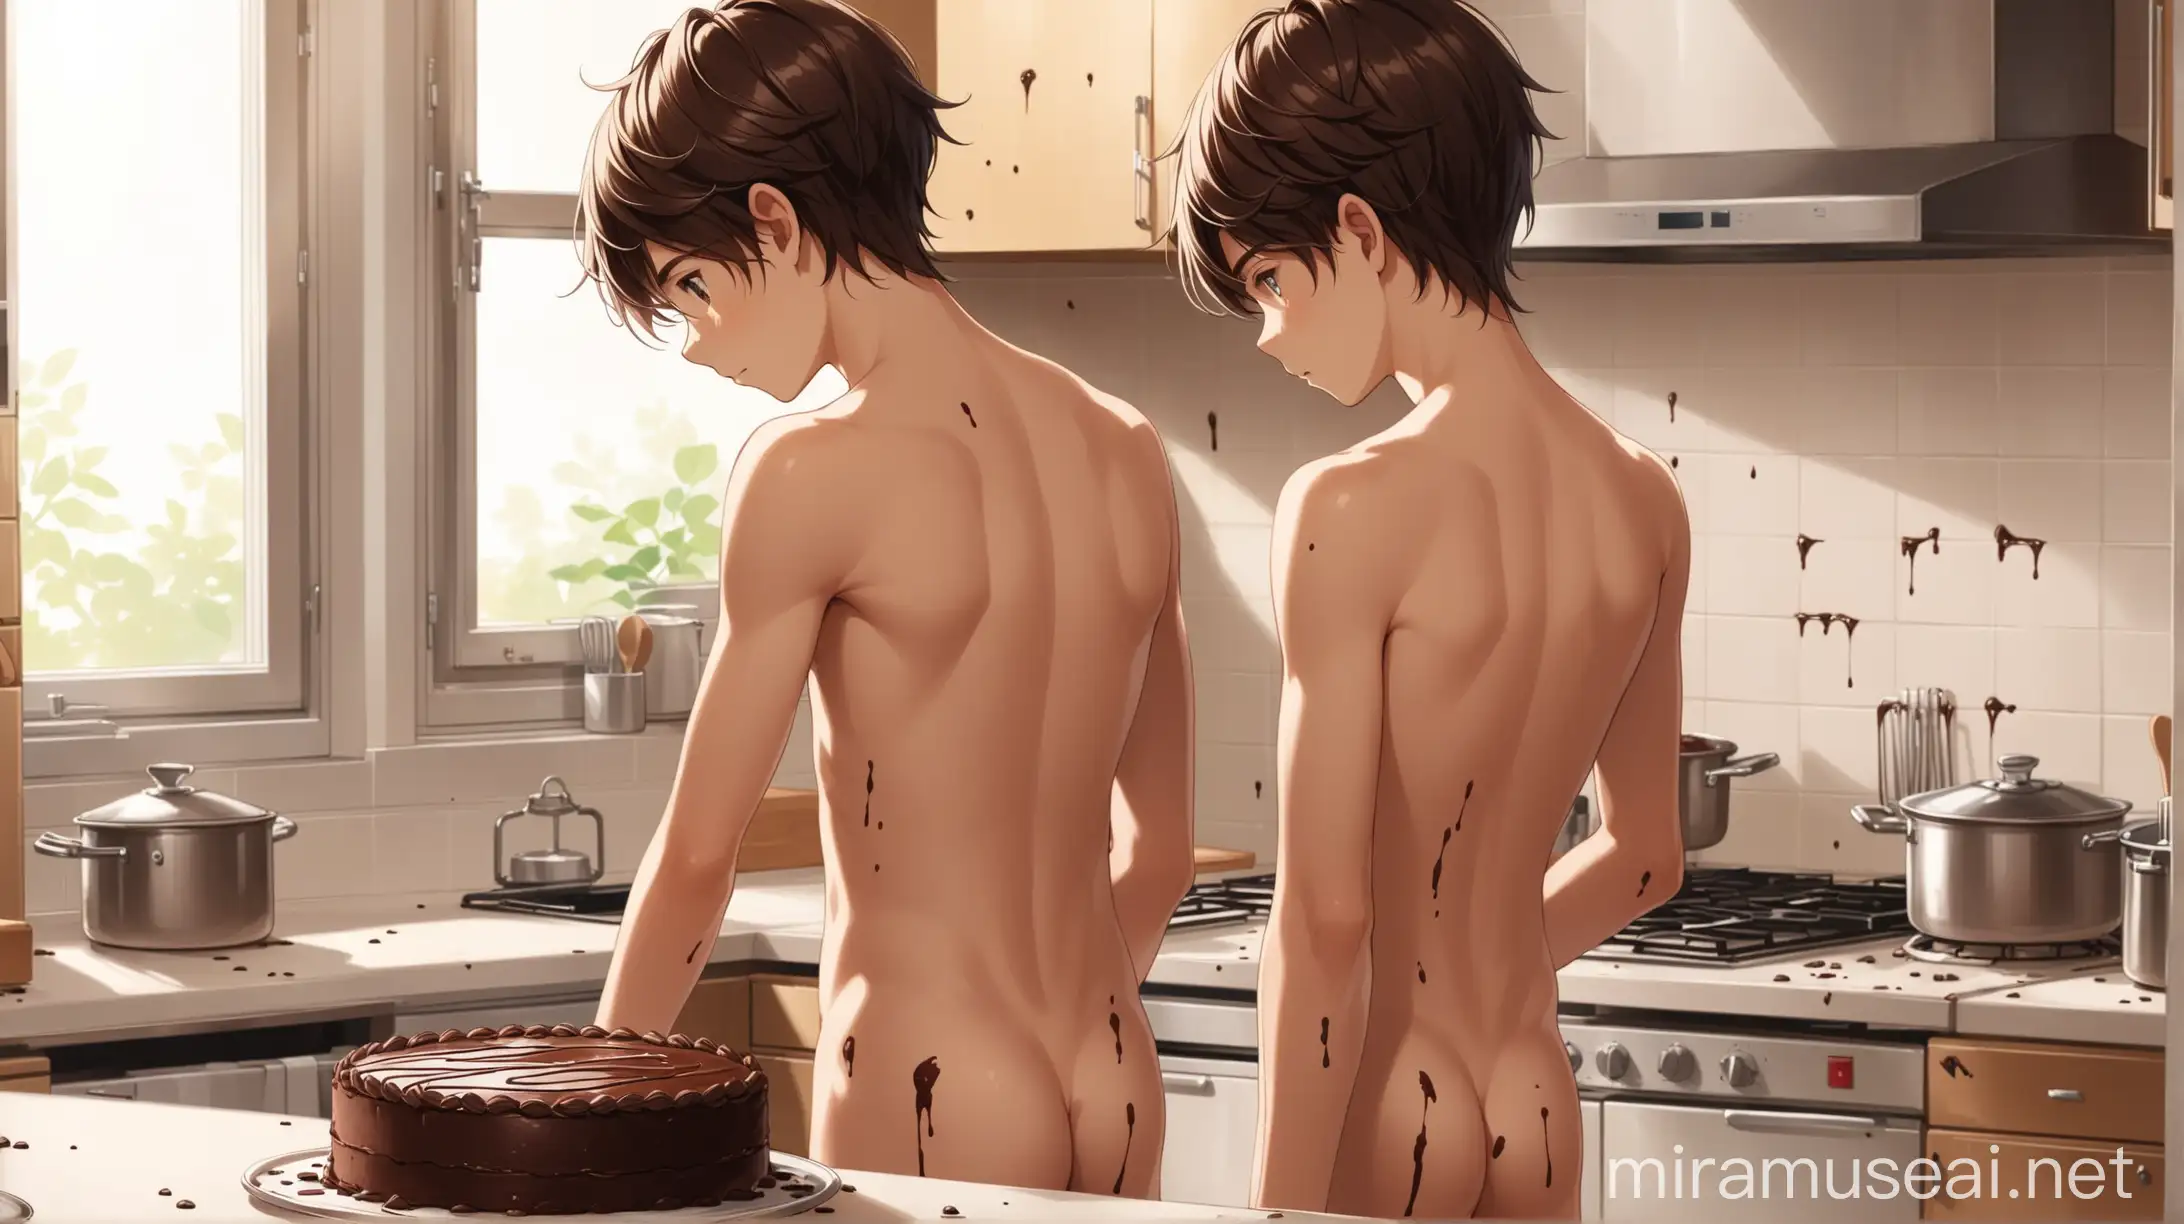 Teenage Boy Baking Chocolate Cake in Messy Kitchen